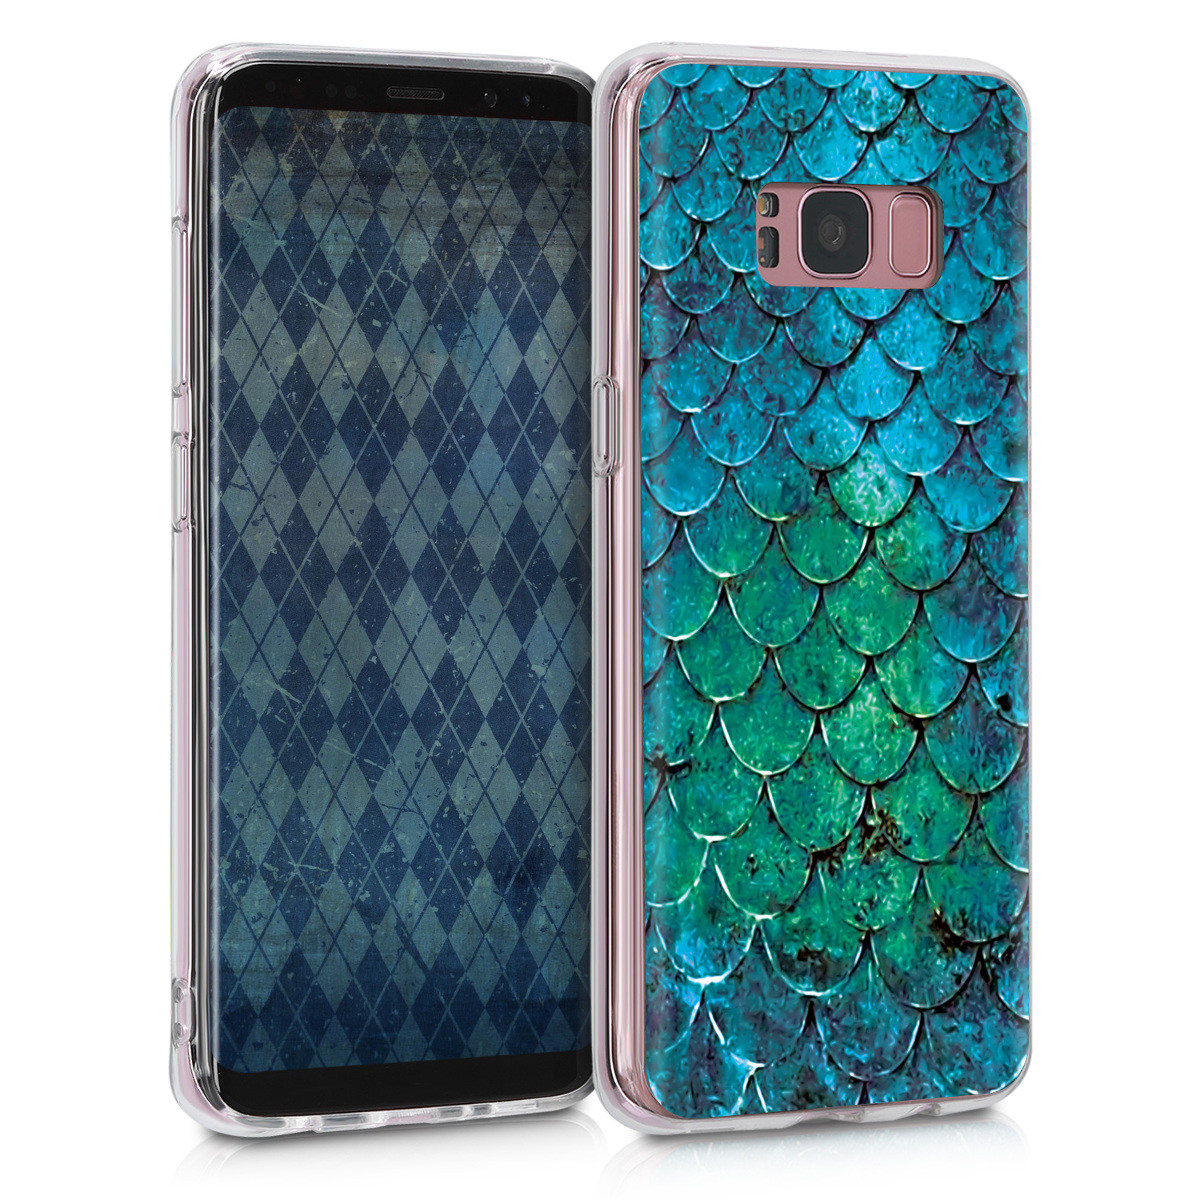 Kvalitní silikonové TPU pouzdro pro Samsung S8 - Mermaid Váhy tyrkysová / modrý / zelený